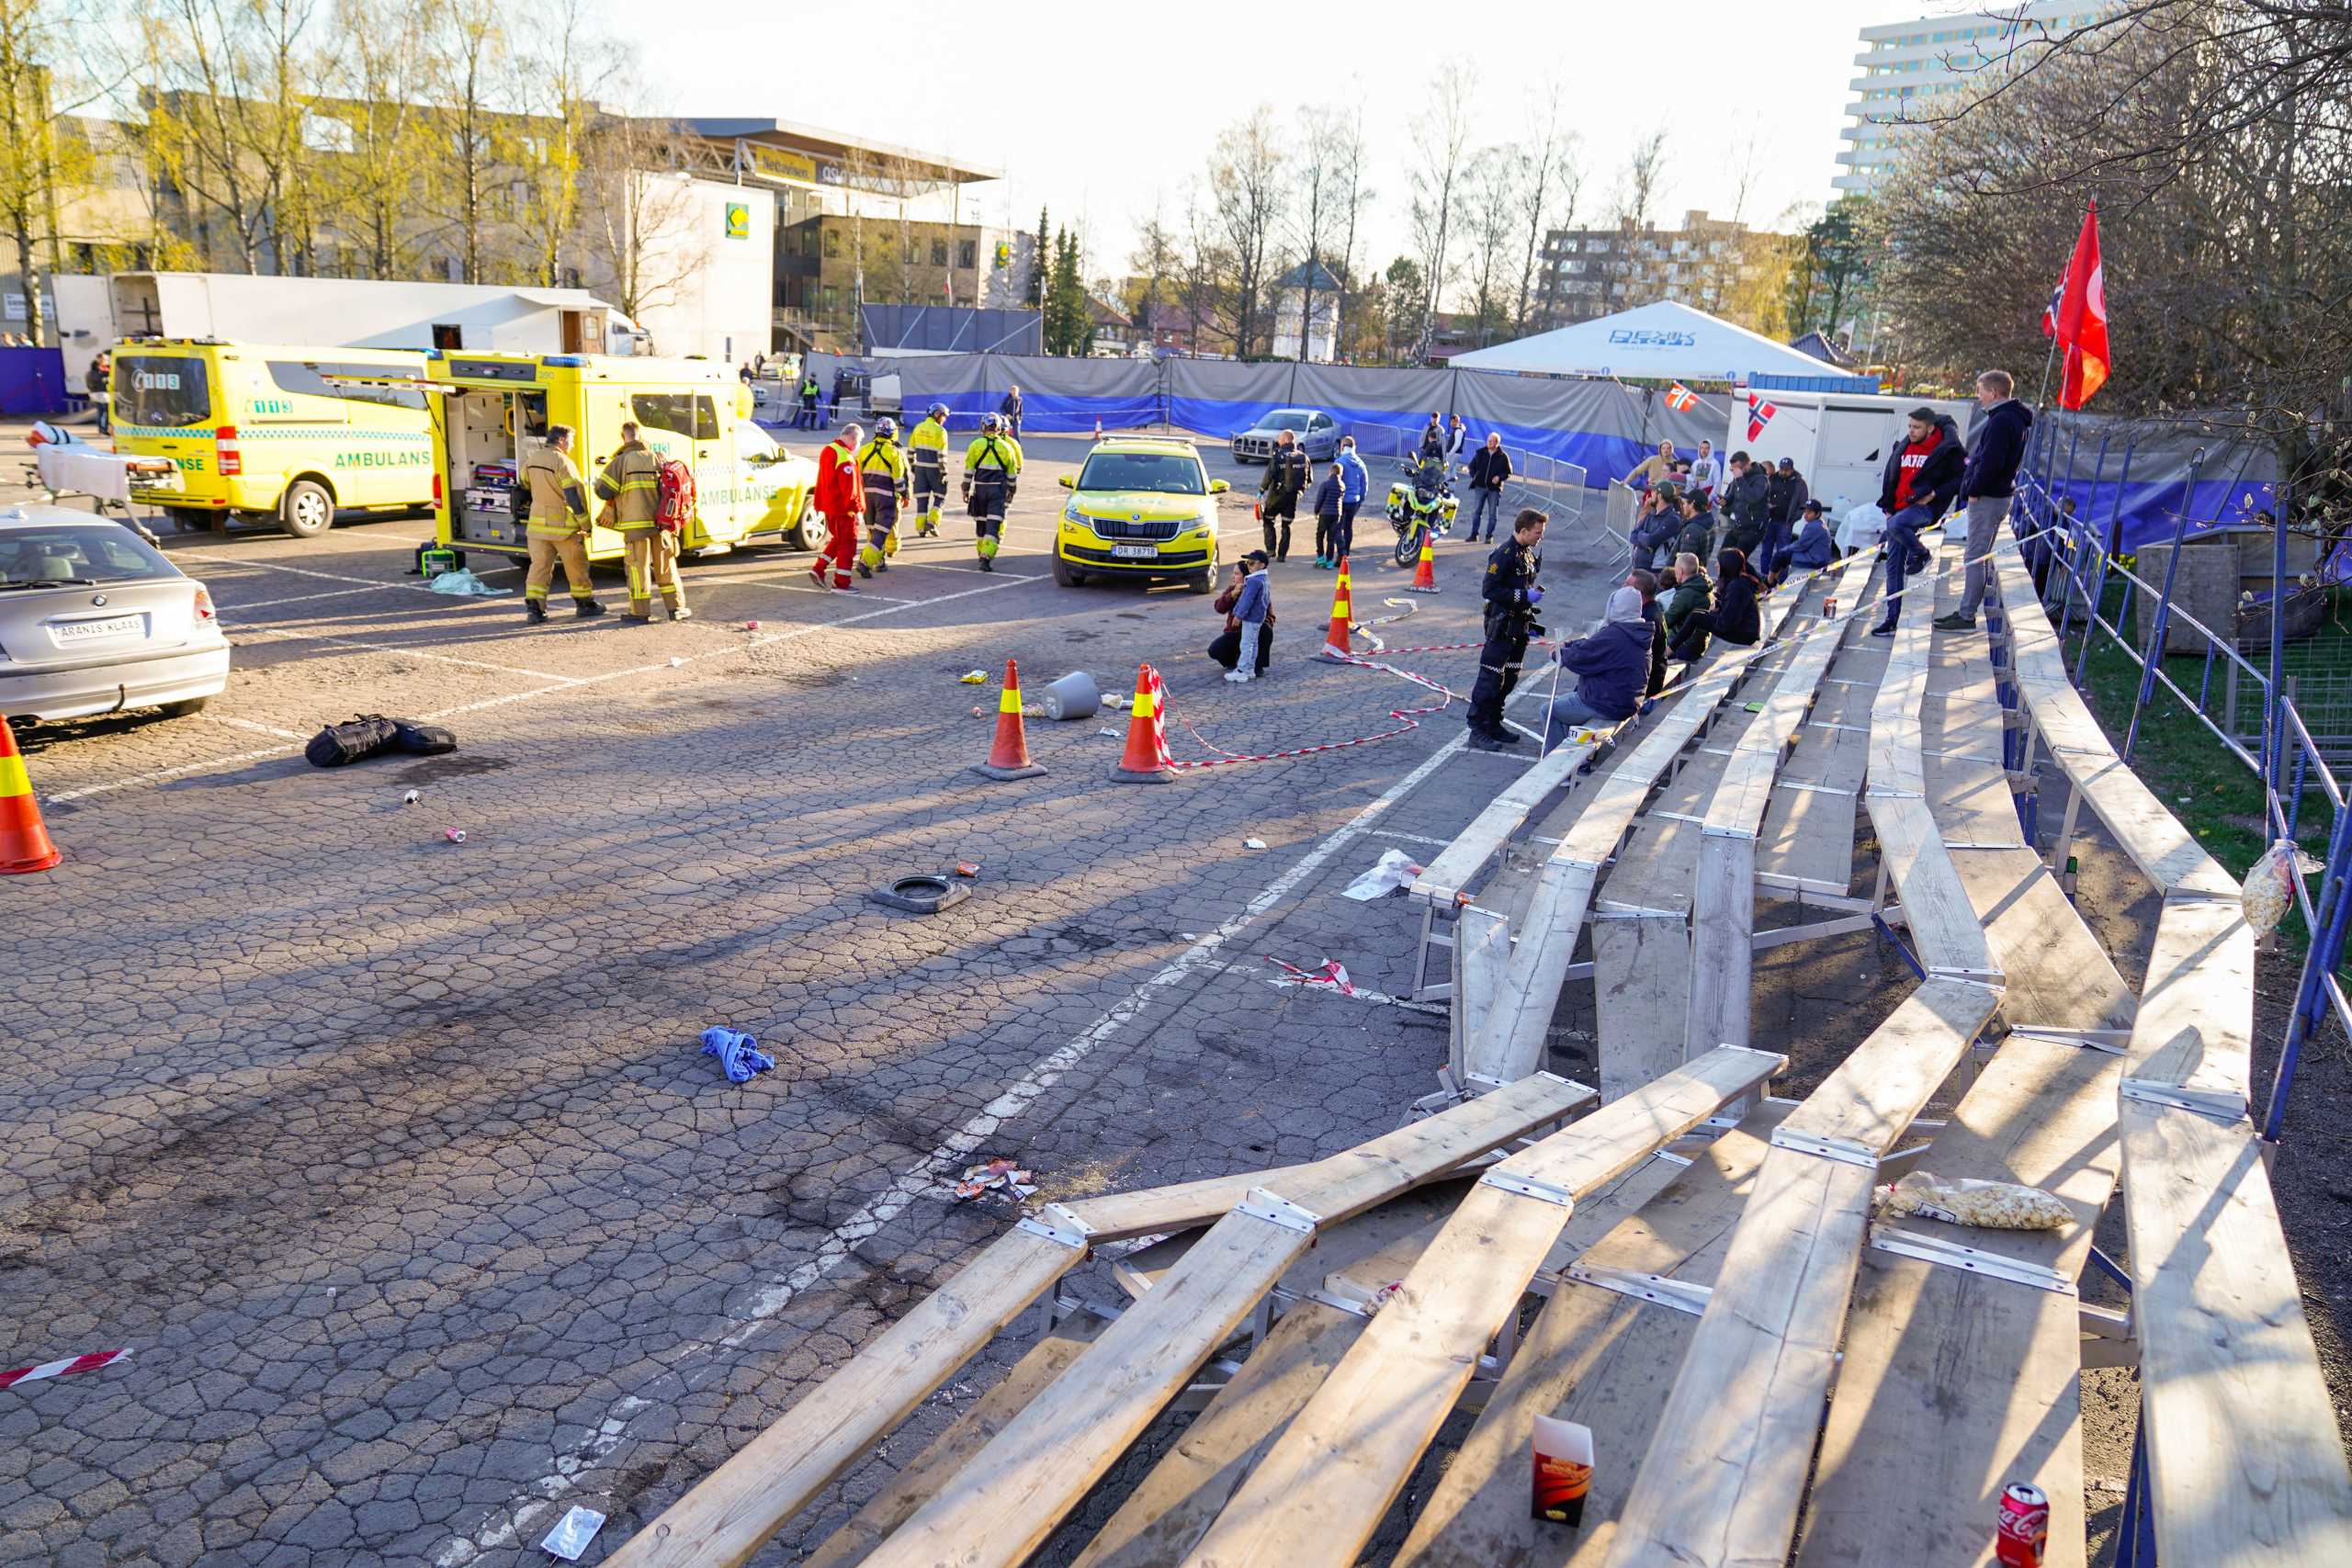 Νορβηγία: Αυτοκίνητο παρέσυρε θεατές σε έκθεση αυτοκινήτων στο Όσλο – 6 τραυματίες